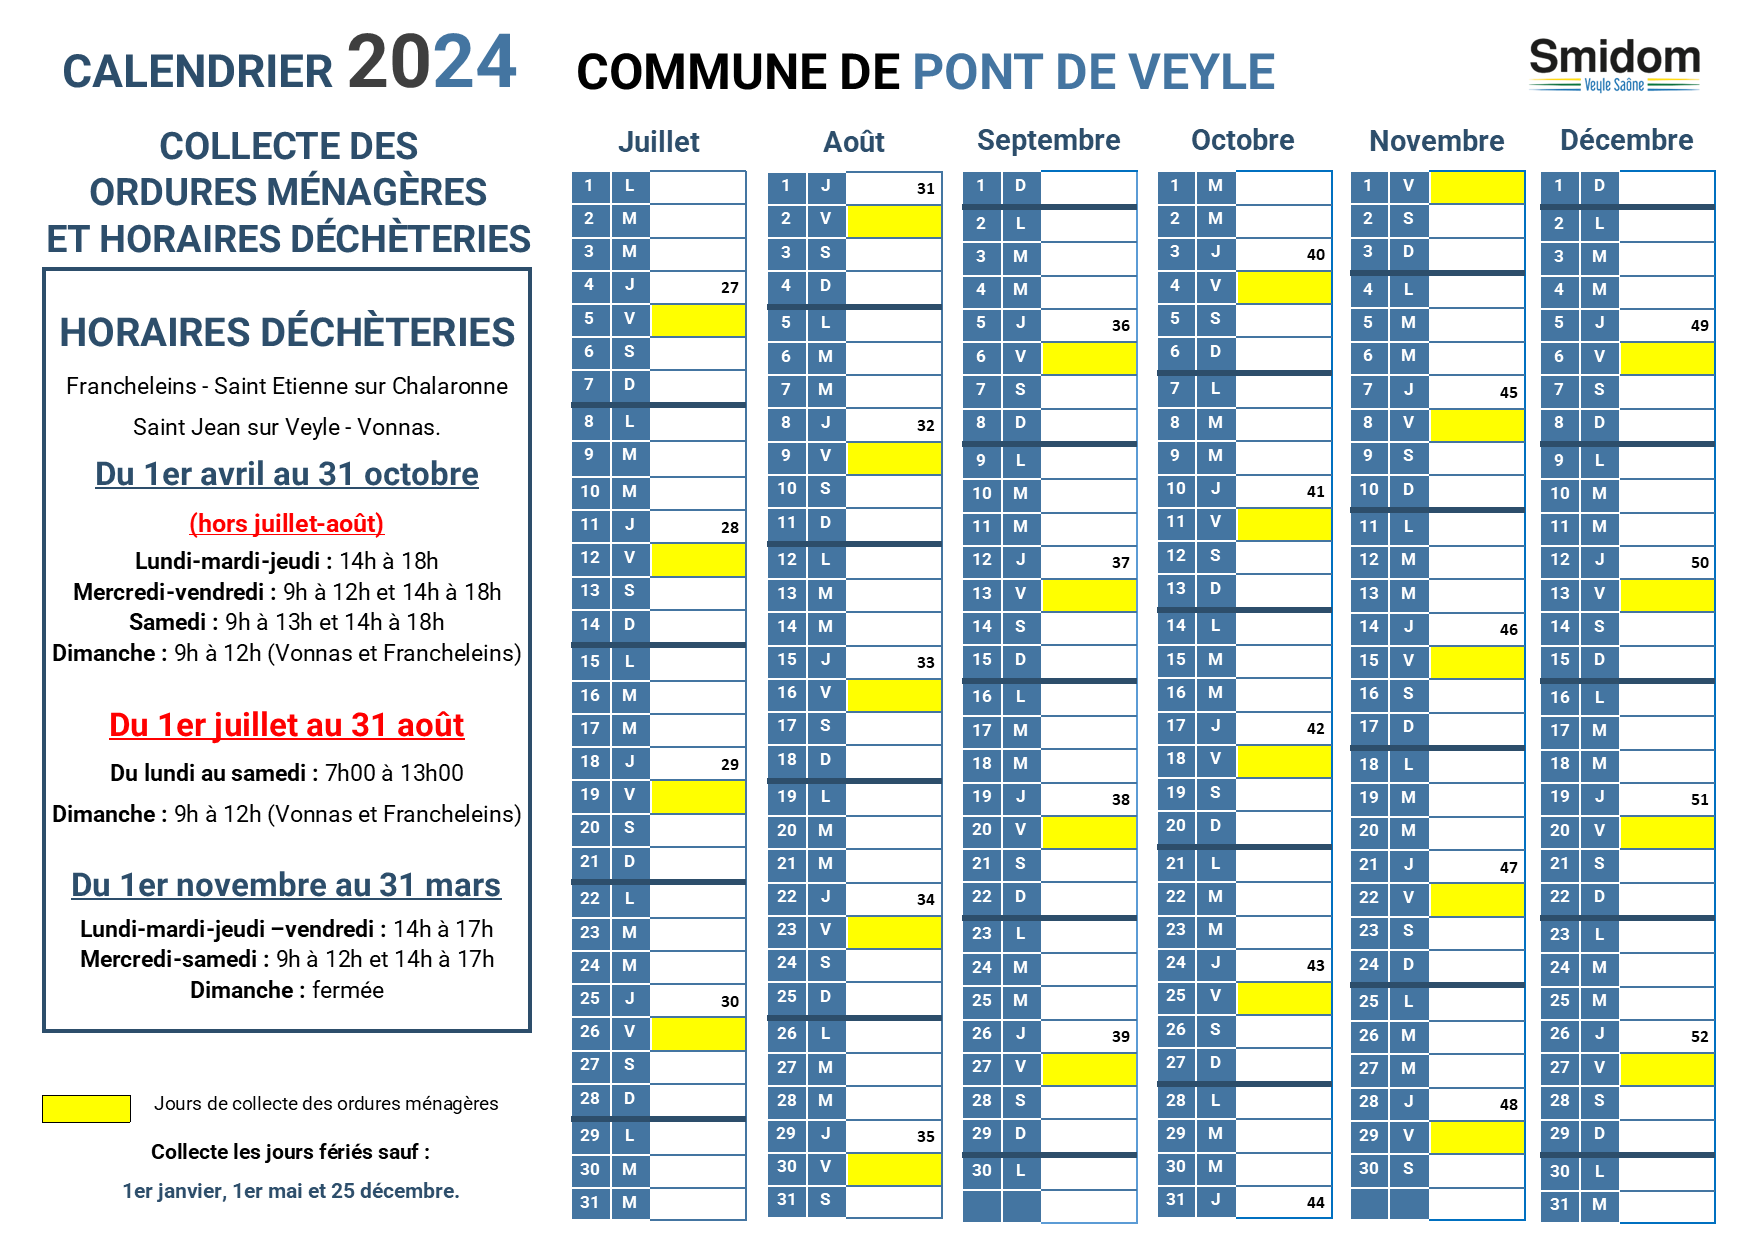 PONT DE VEYLE - Calendrier 2024 - 2.png